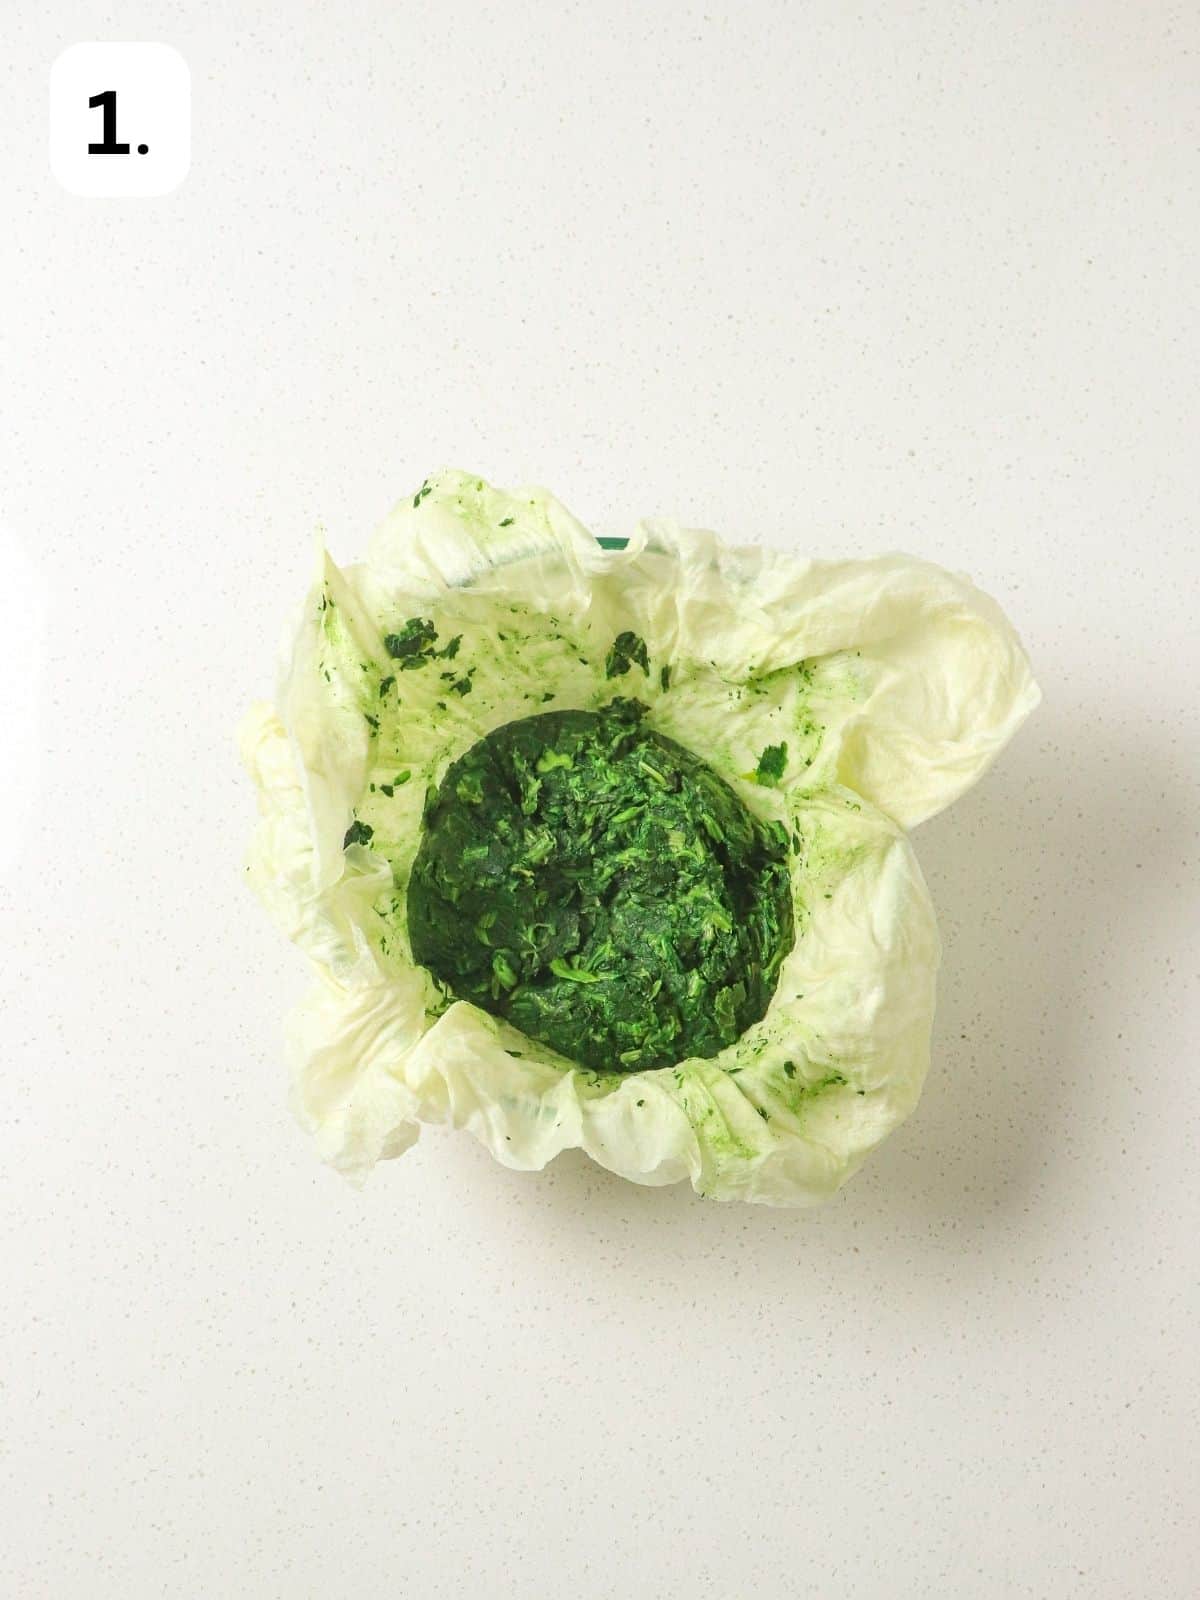 Frozen lettuce thawed in paper towels